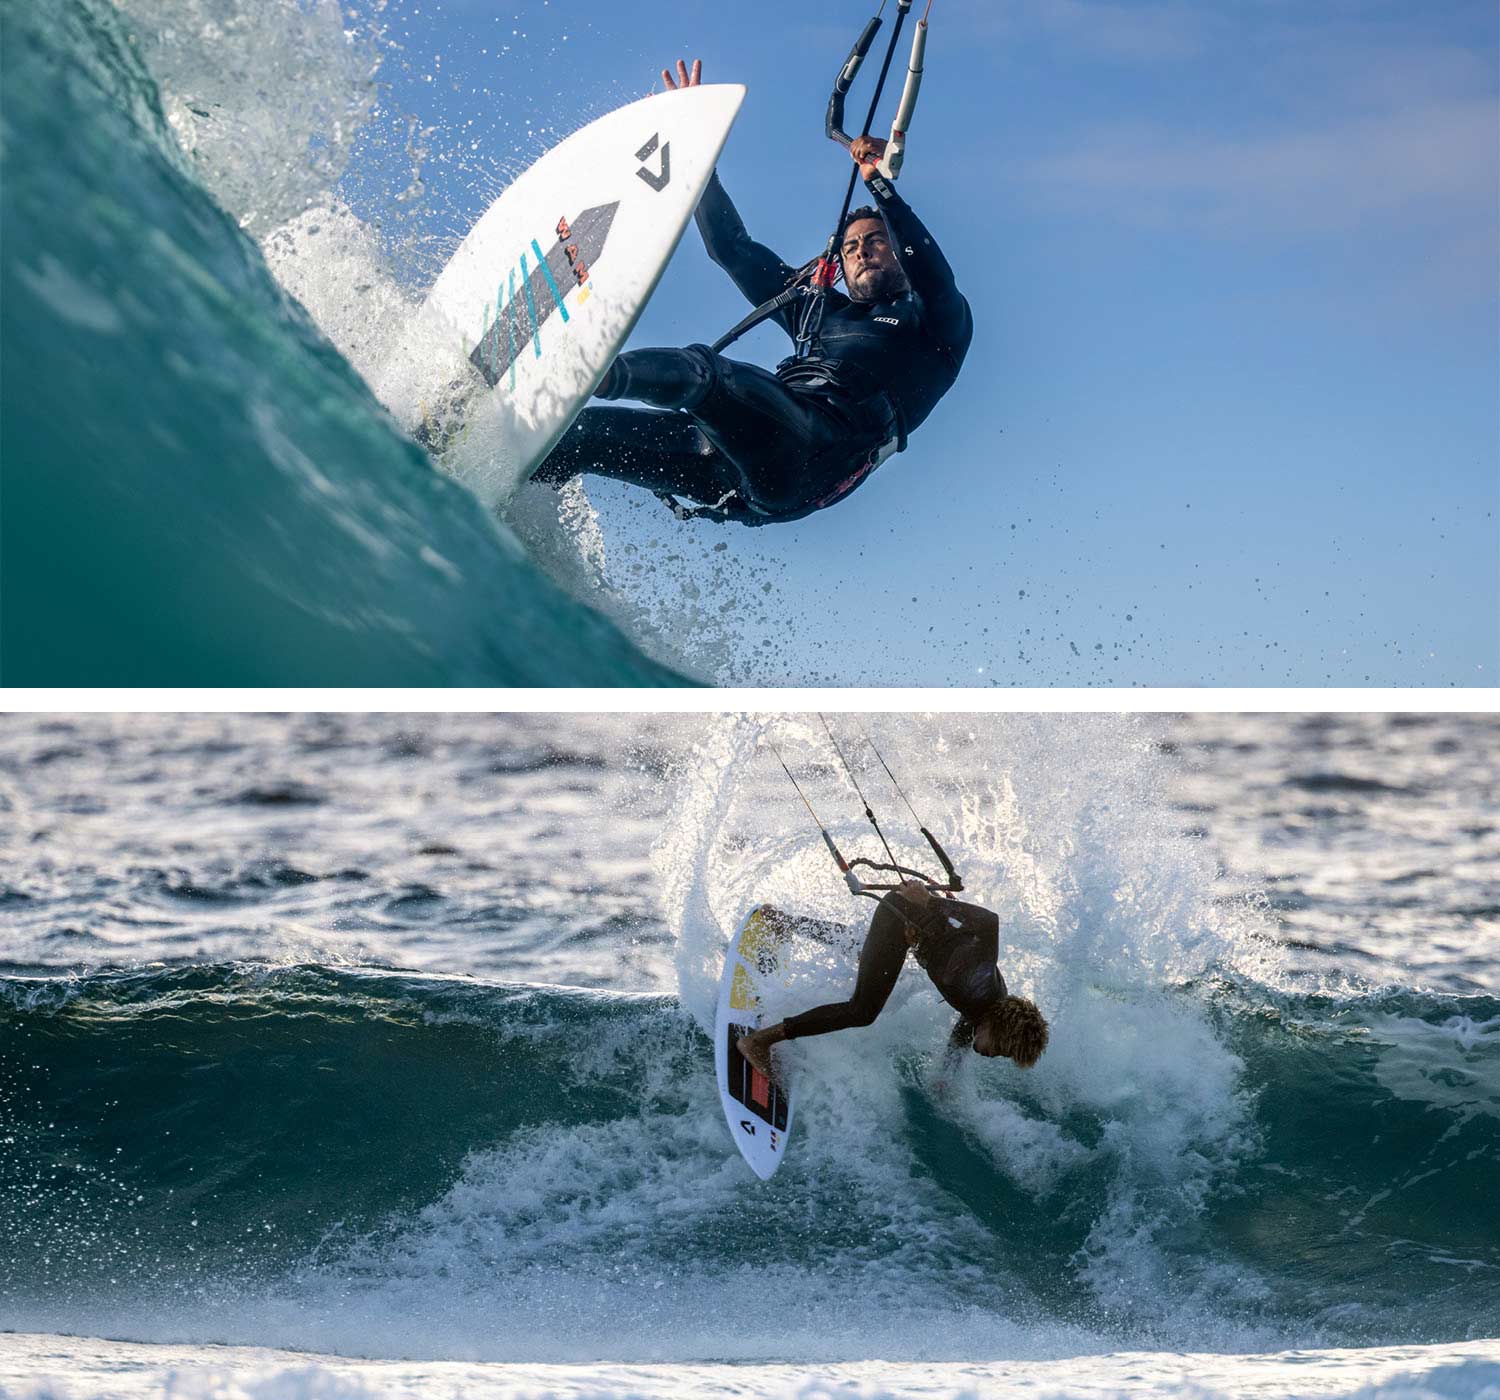 Des kitesurfers pro riders surfent de grosses vagues en tant que professionnels du kitesurf.